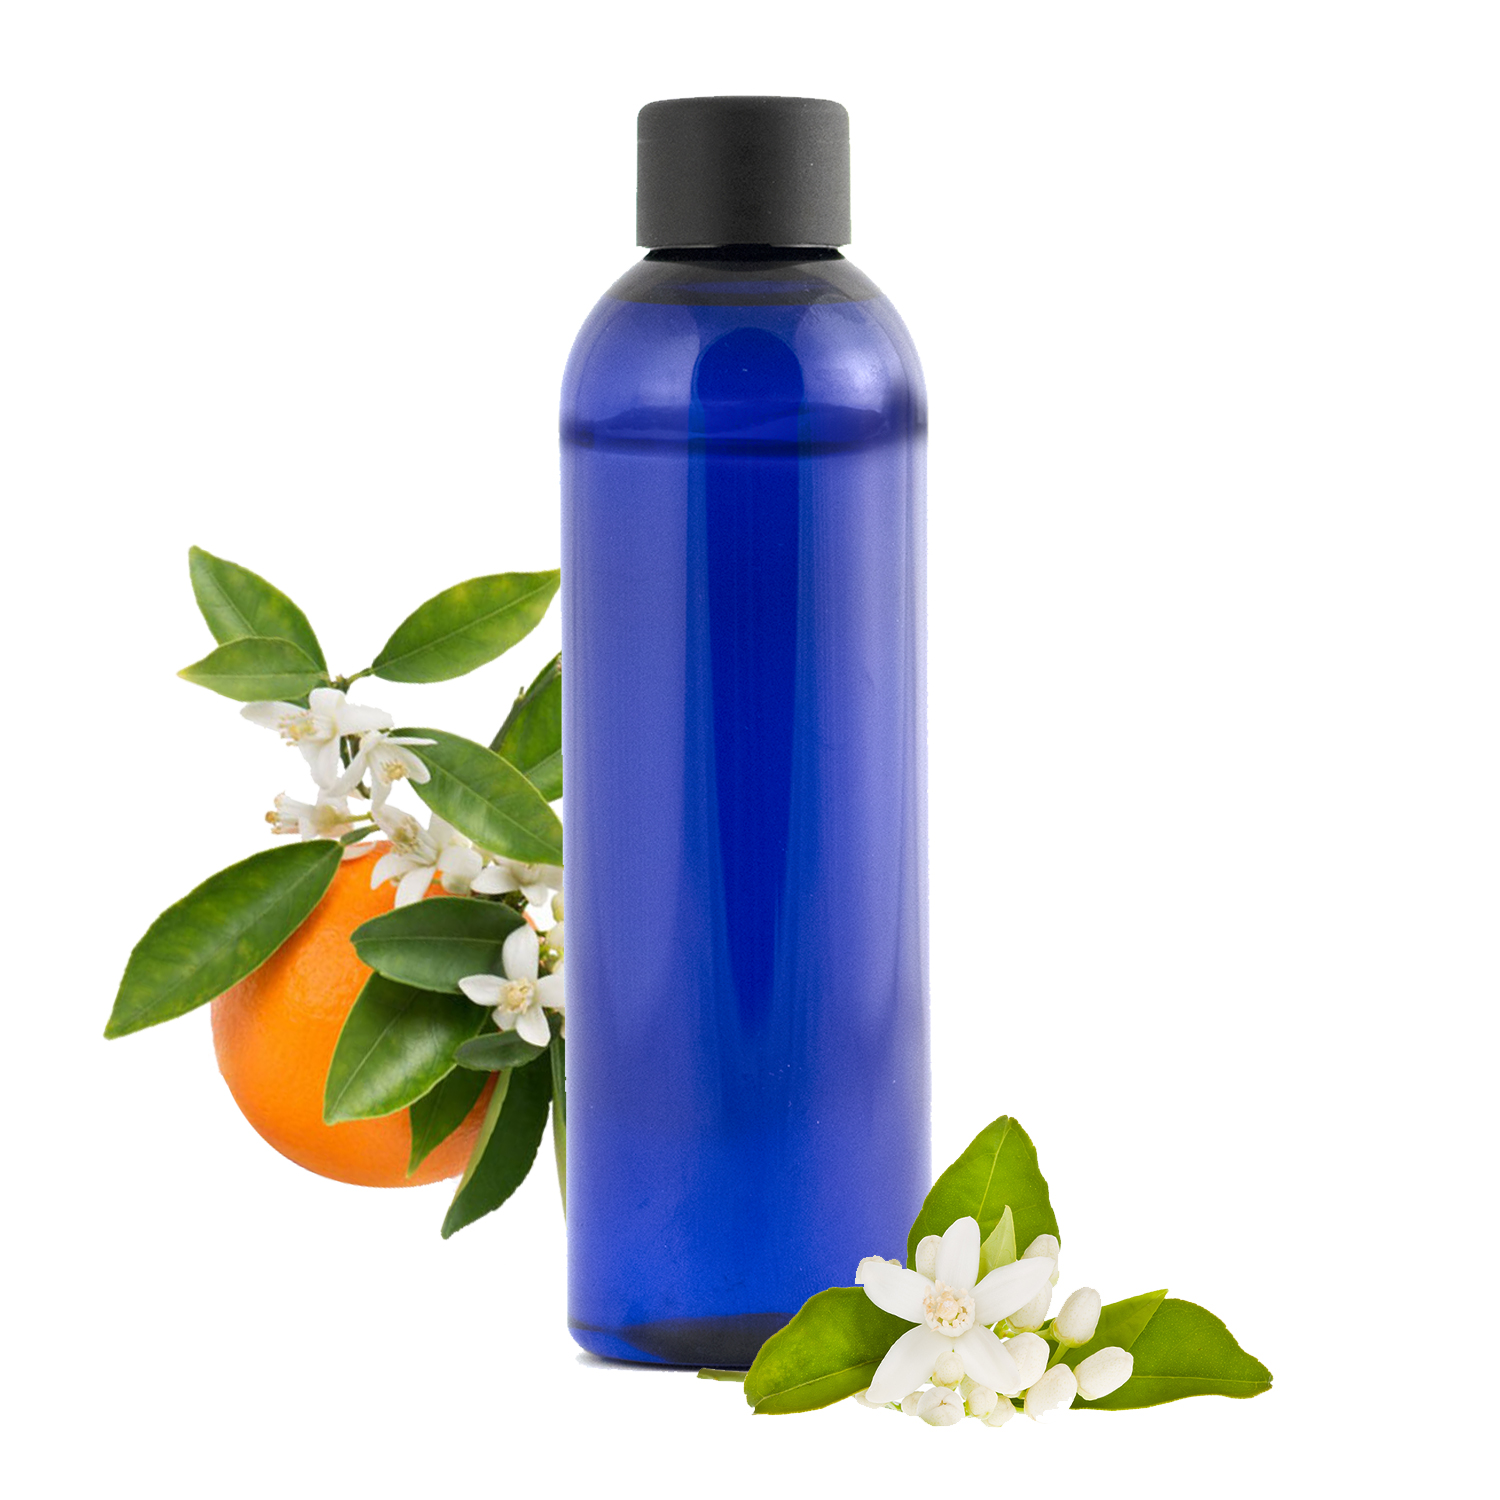 Hydrolat de Fleur d'Oranger : bienfaits et utilisations en